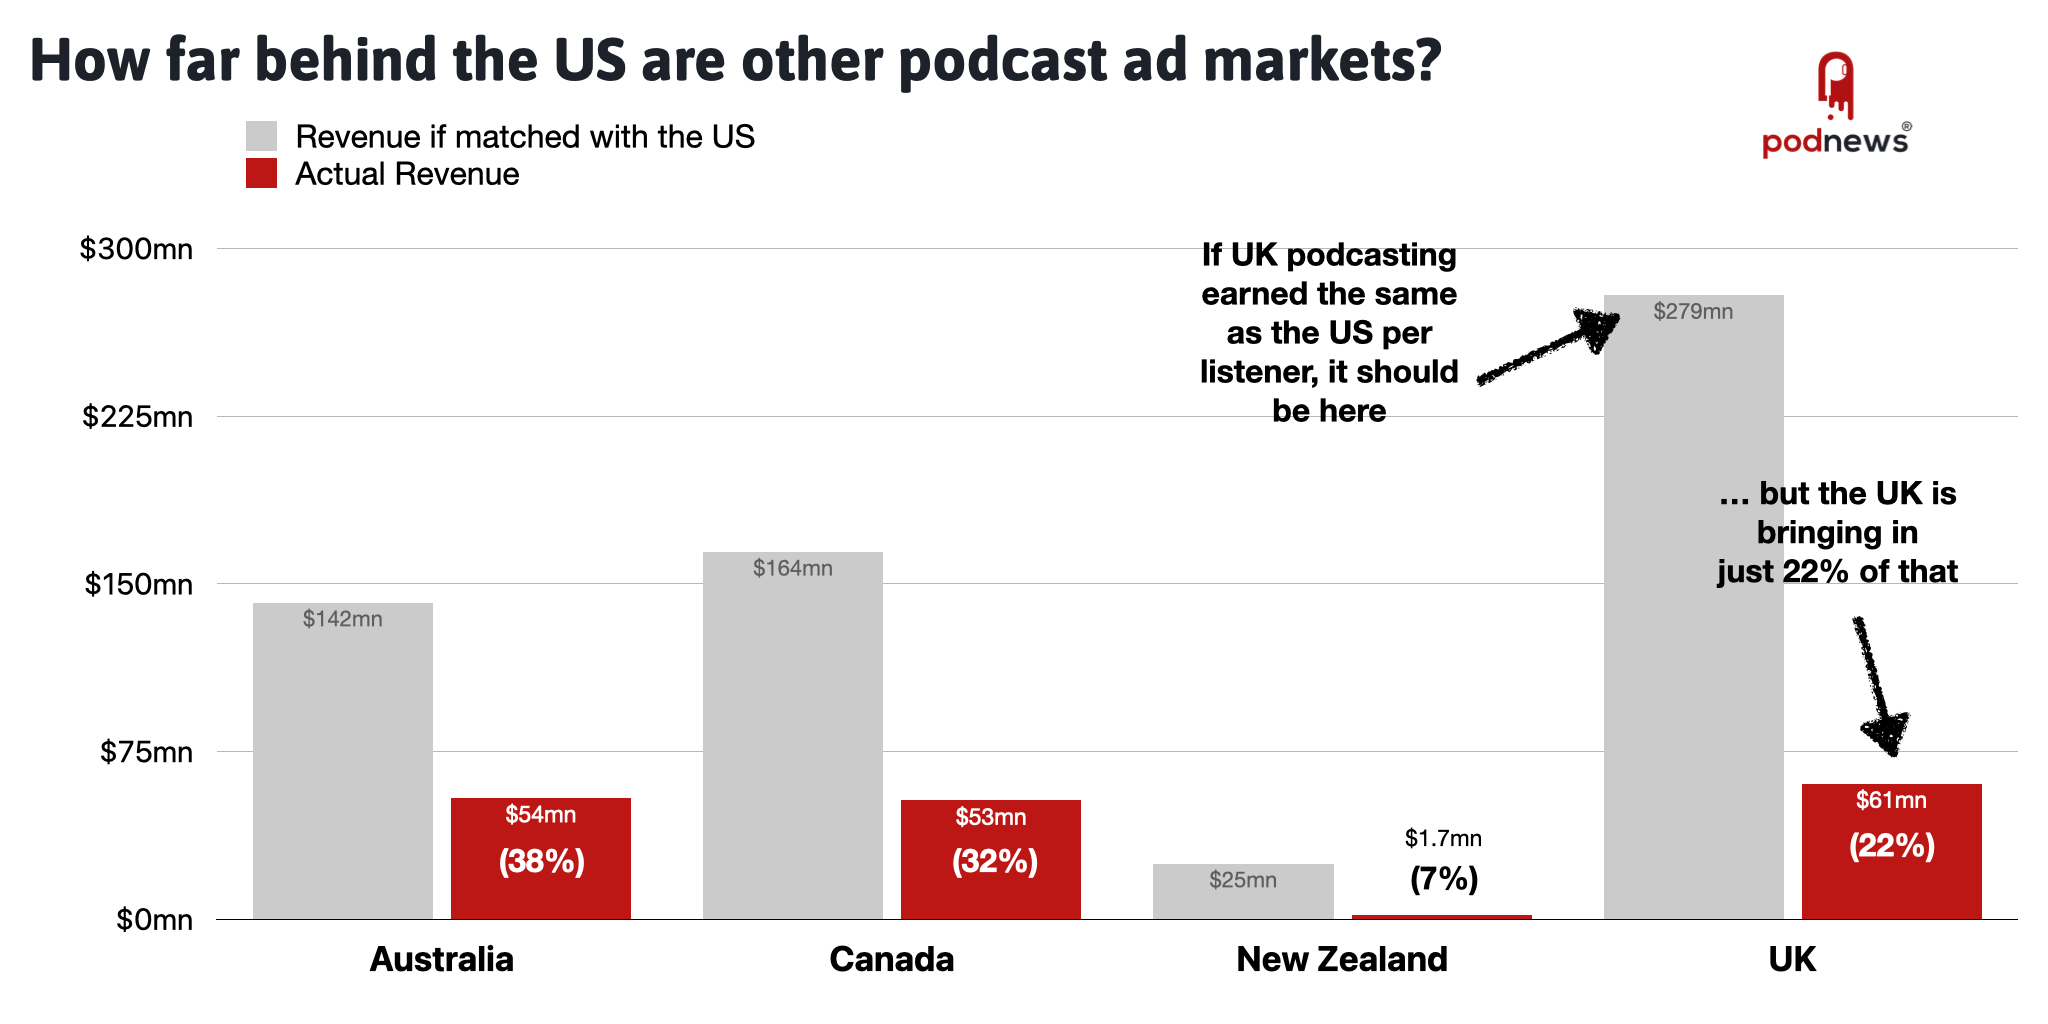 Podcast ad markets